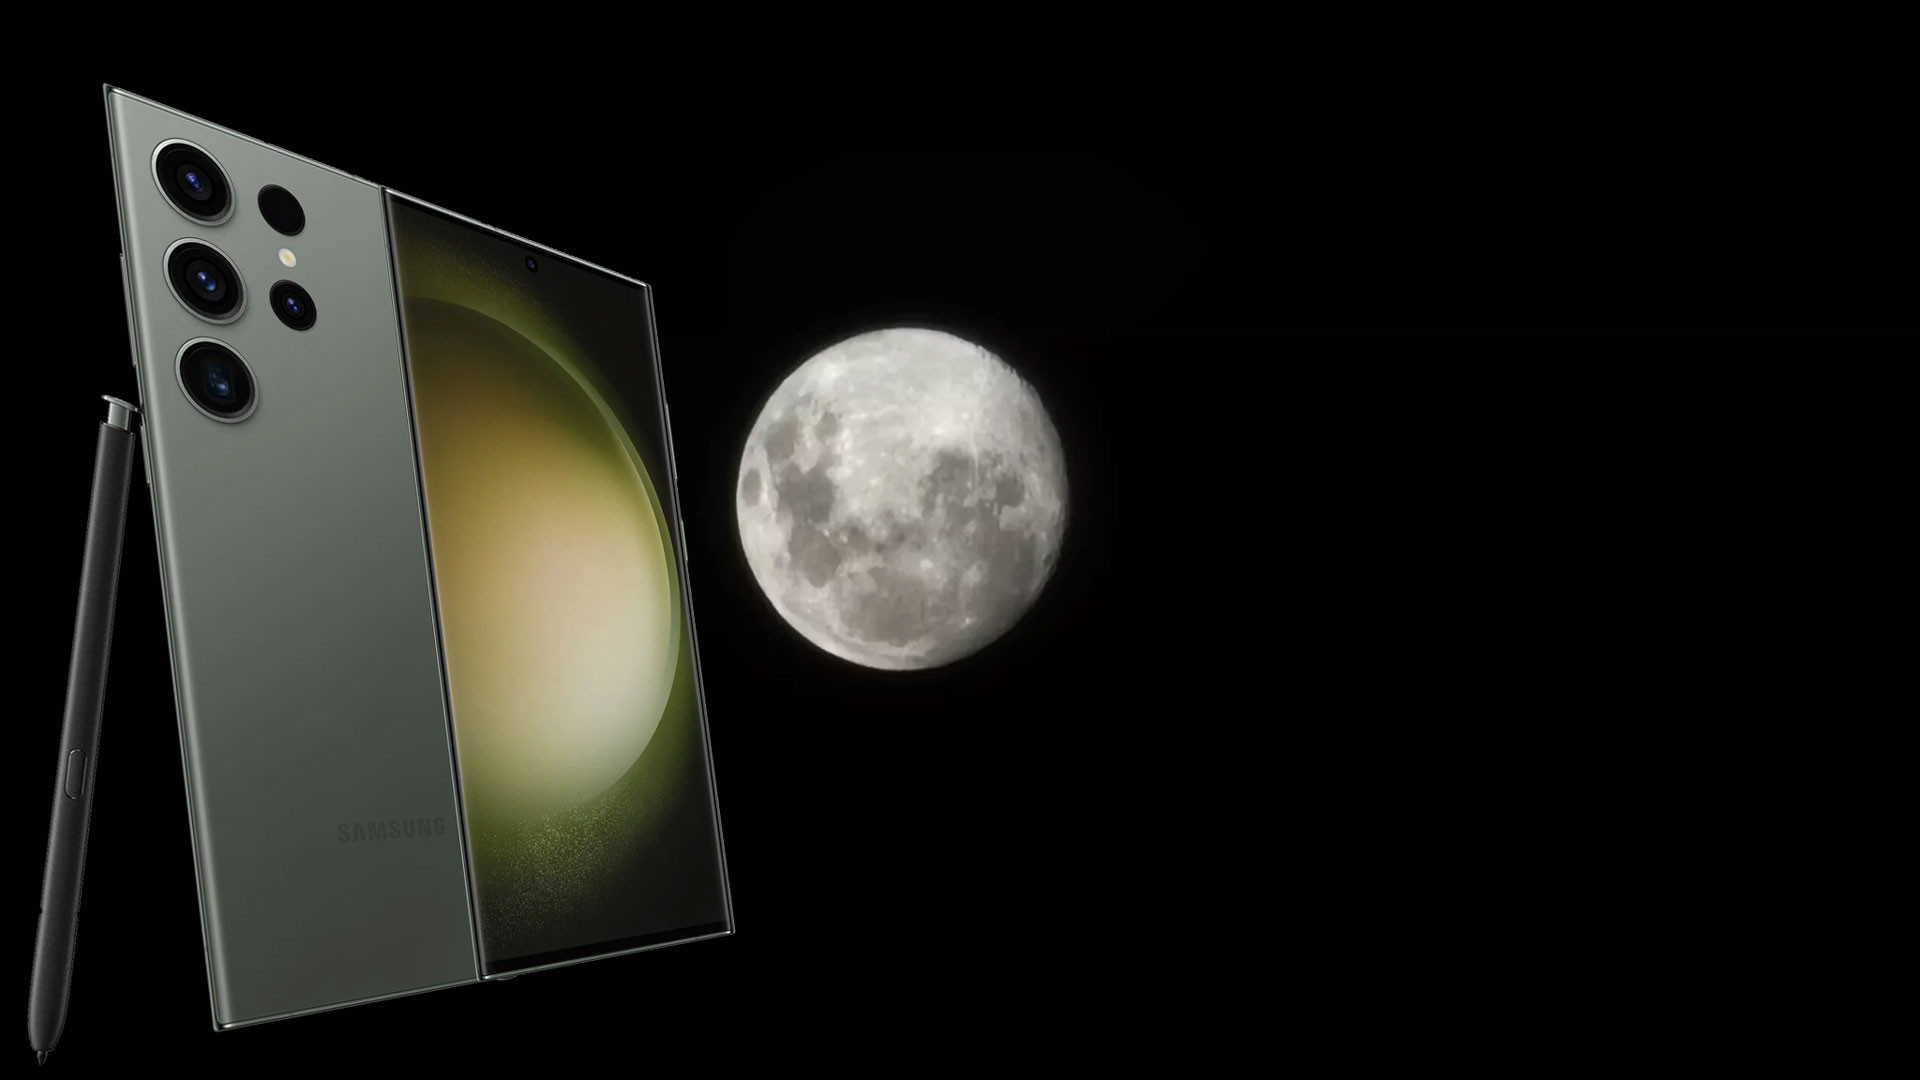 Samsung обманывает с фото луны? Бренд дал официальный комментарий